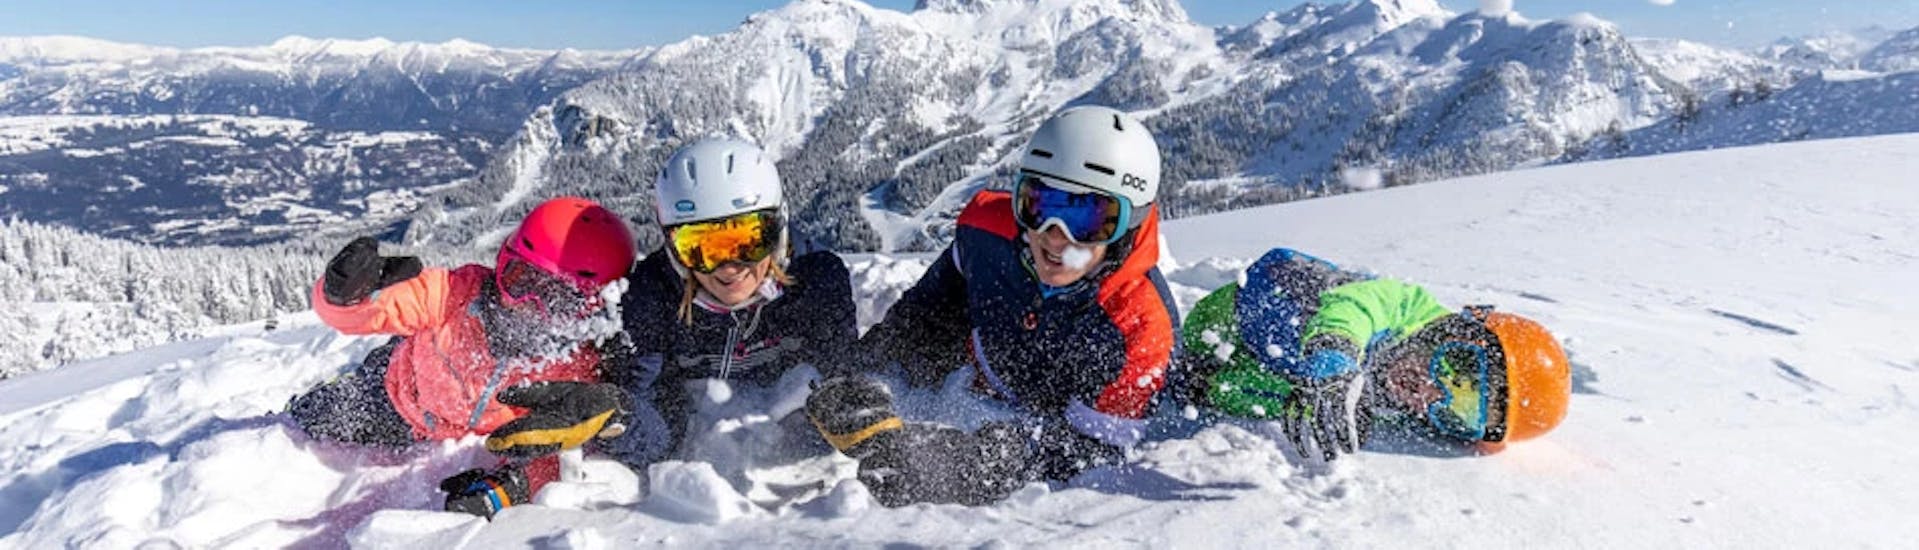 Clases de esquí privadas para adultos para todos los niveles con Die Skischule.at Nassfeld.